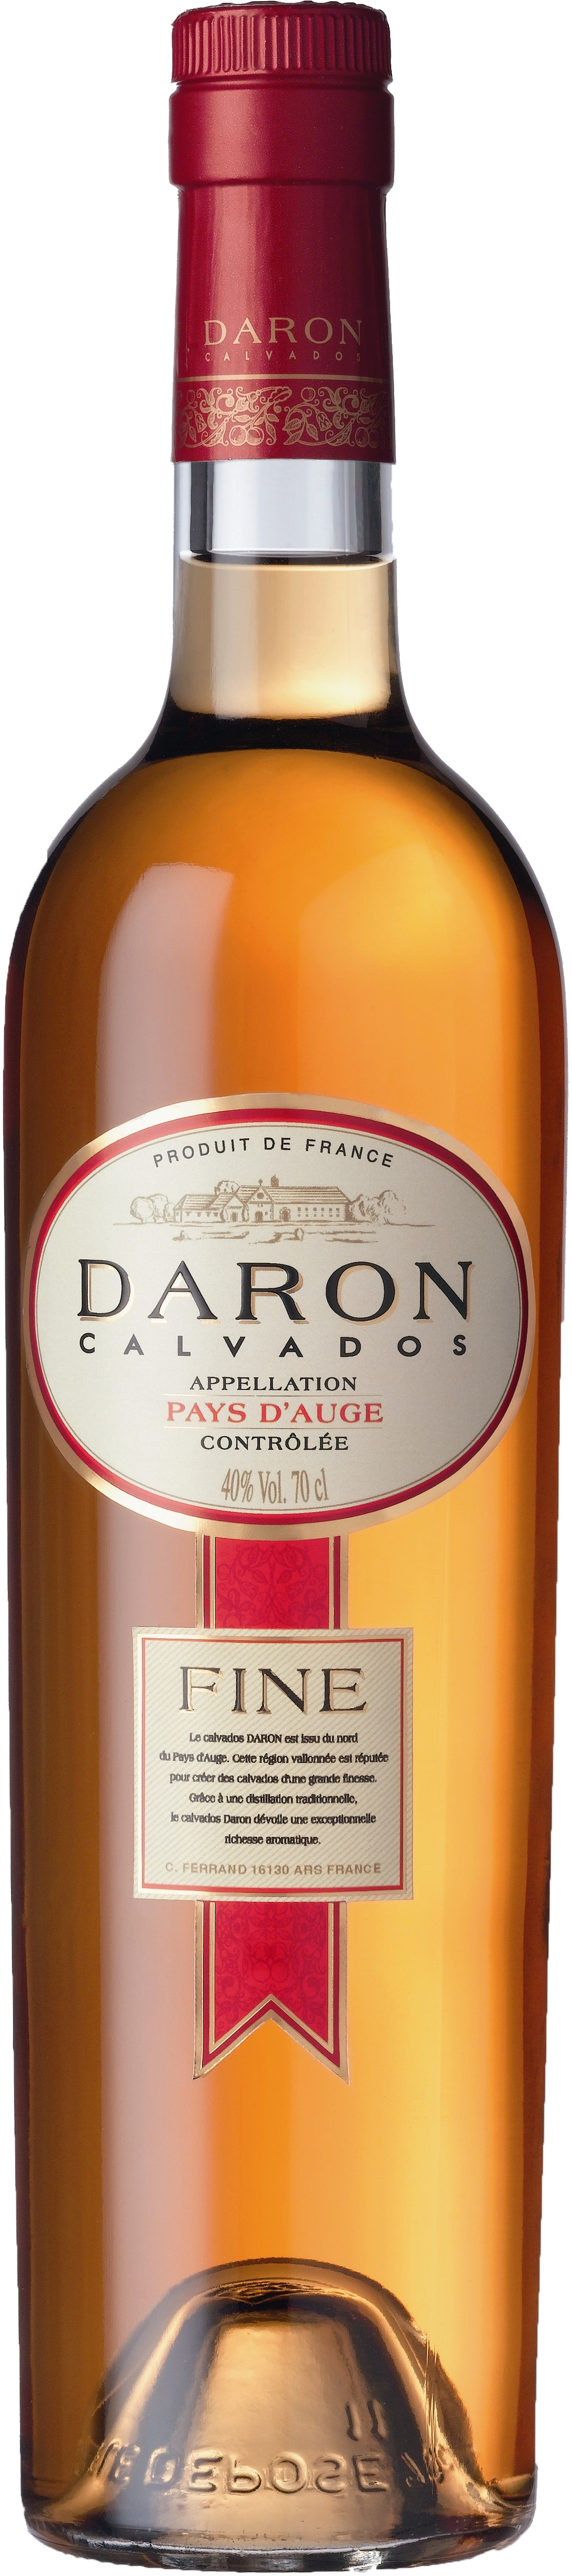 Daron Calvados Fine 5 Jahre 40% 0,7l